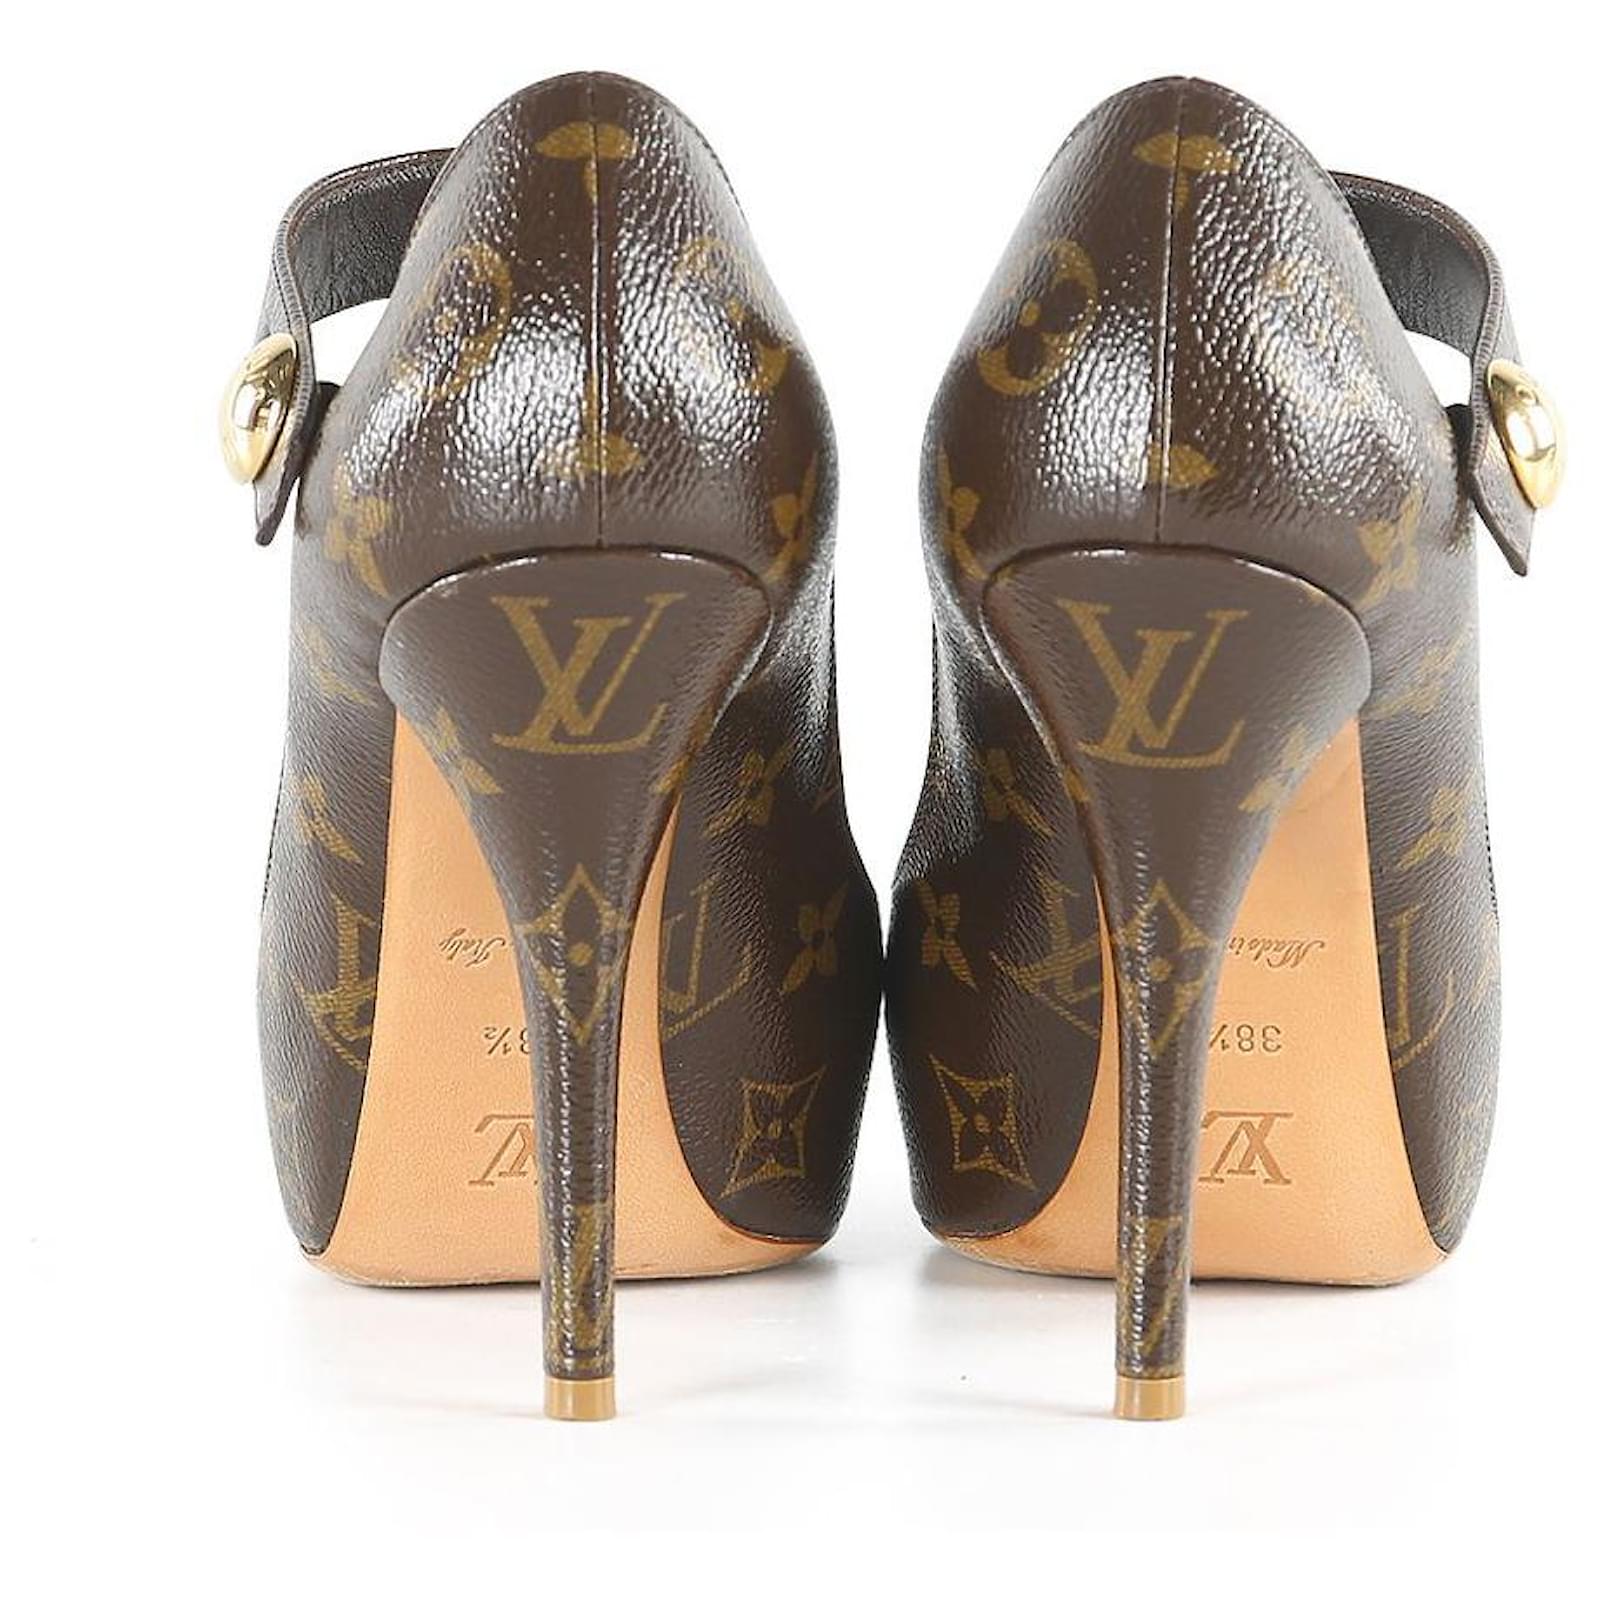 LOUIS VUITTON beige Monogram Vernis leather MARY JANE Pumps Shoes 37.5